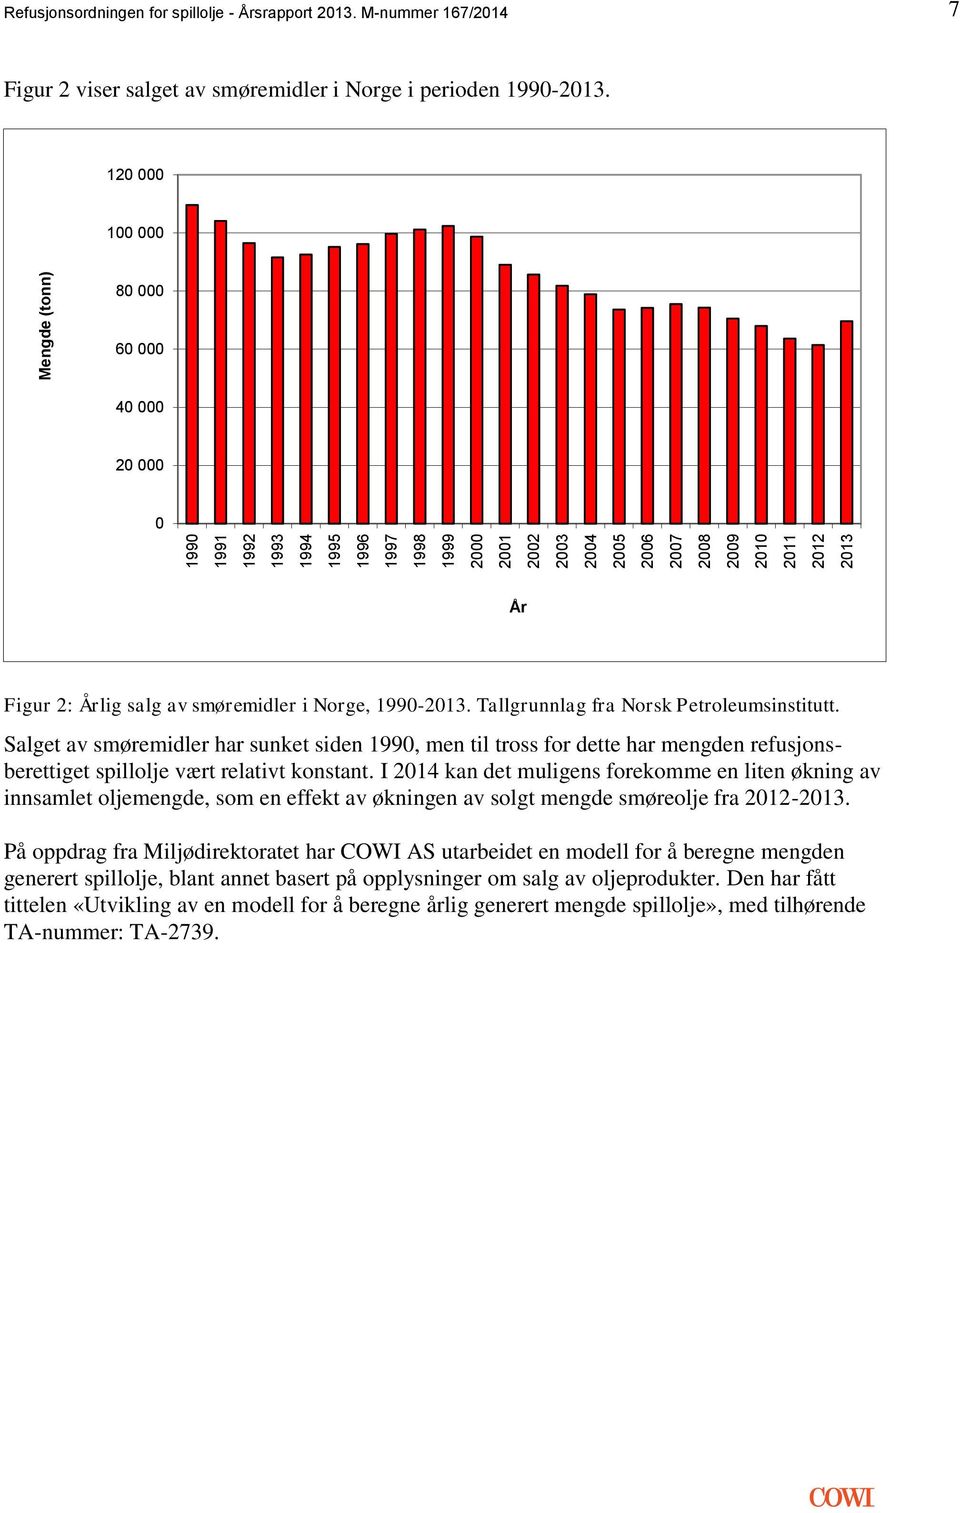 Tallgrunnlag fra Norsk Petroleumsinstitutt. Salget av smøremidler har sunket siden 1990, men til tross for dette har mengden refusjonsberettiget spillolje vært relativt konstant.